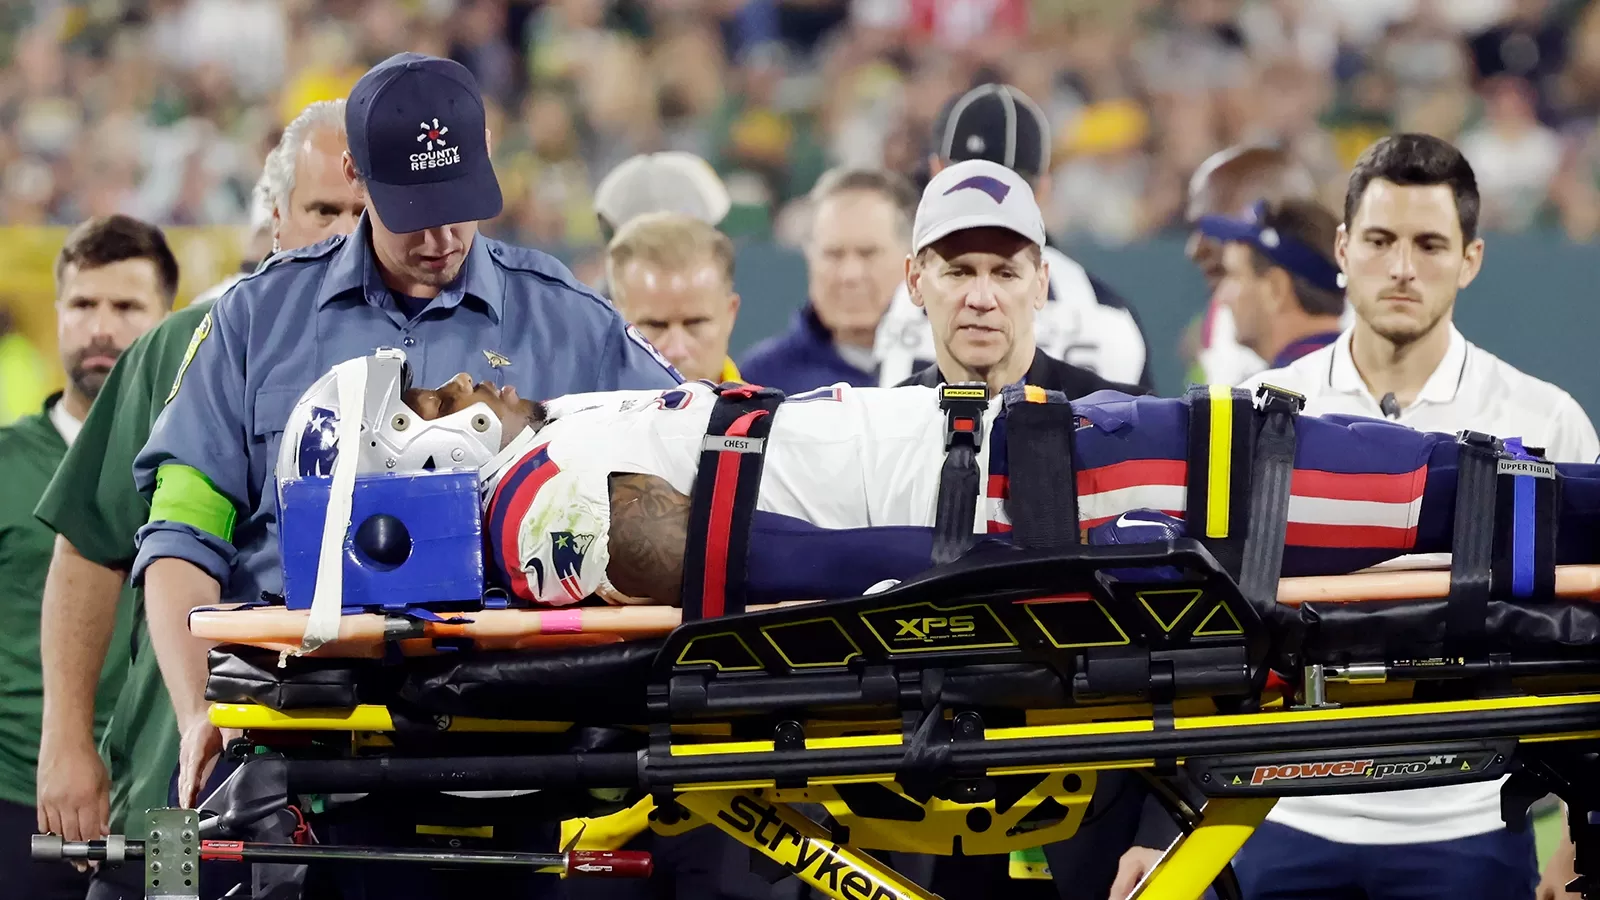 Menos de dois meses após grave lesão, Hayward consegue caminhar sem bota  protetora - ESPN